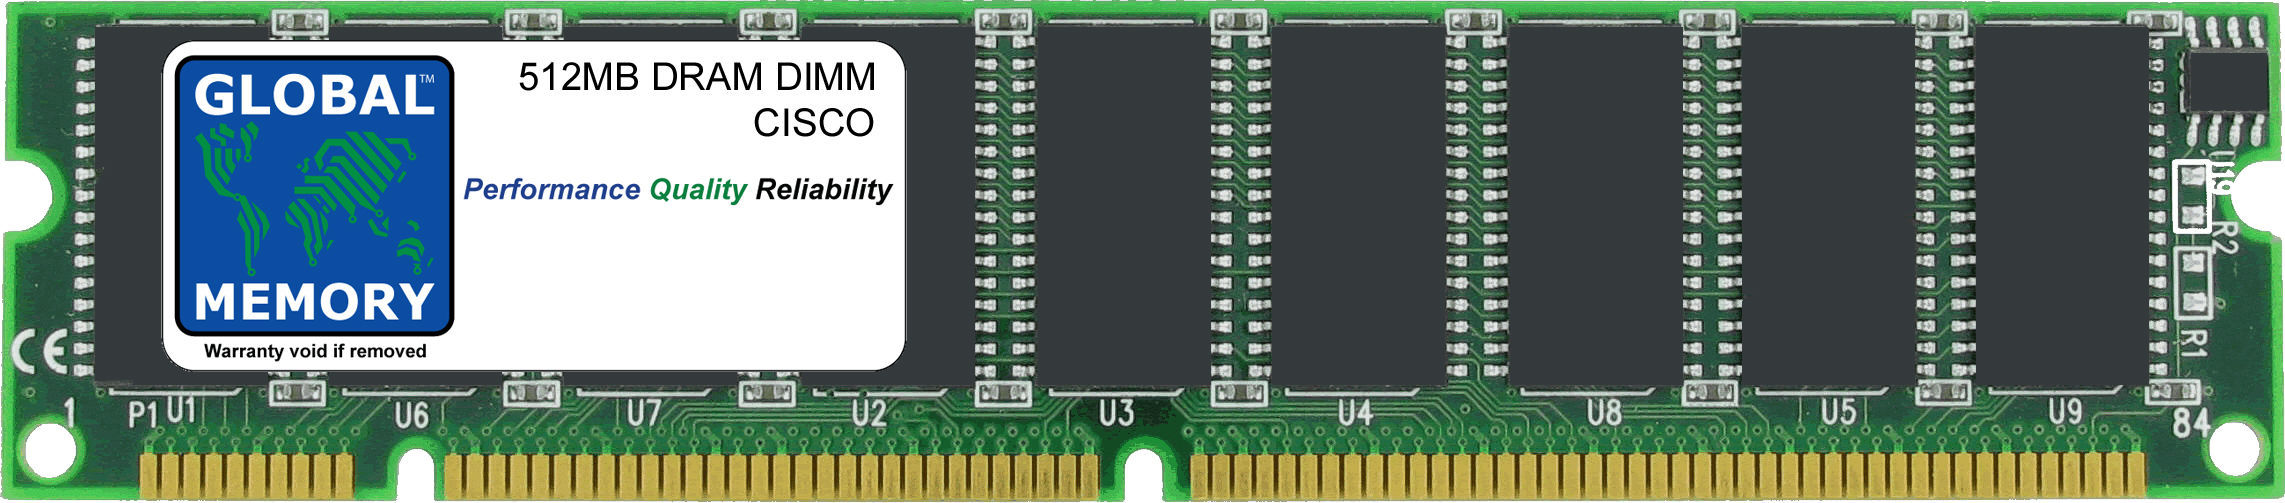 512MB DRAM DIMM MEMORY RAM FOR CISCO MEDIA CONVERGENCE SERVER MCS 7815-1000 / MCS 7825-1133 / MCS 7835-1266 (MEM-7815-1000-512) - Click Image to Close